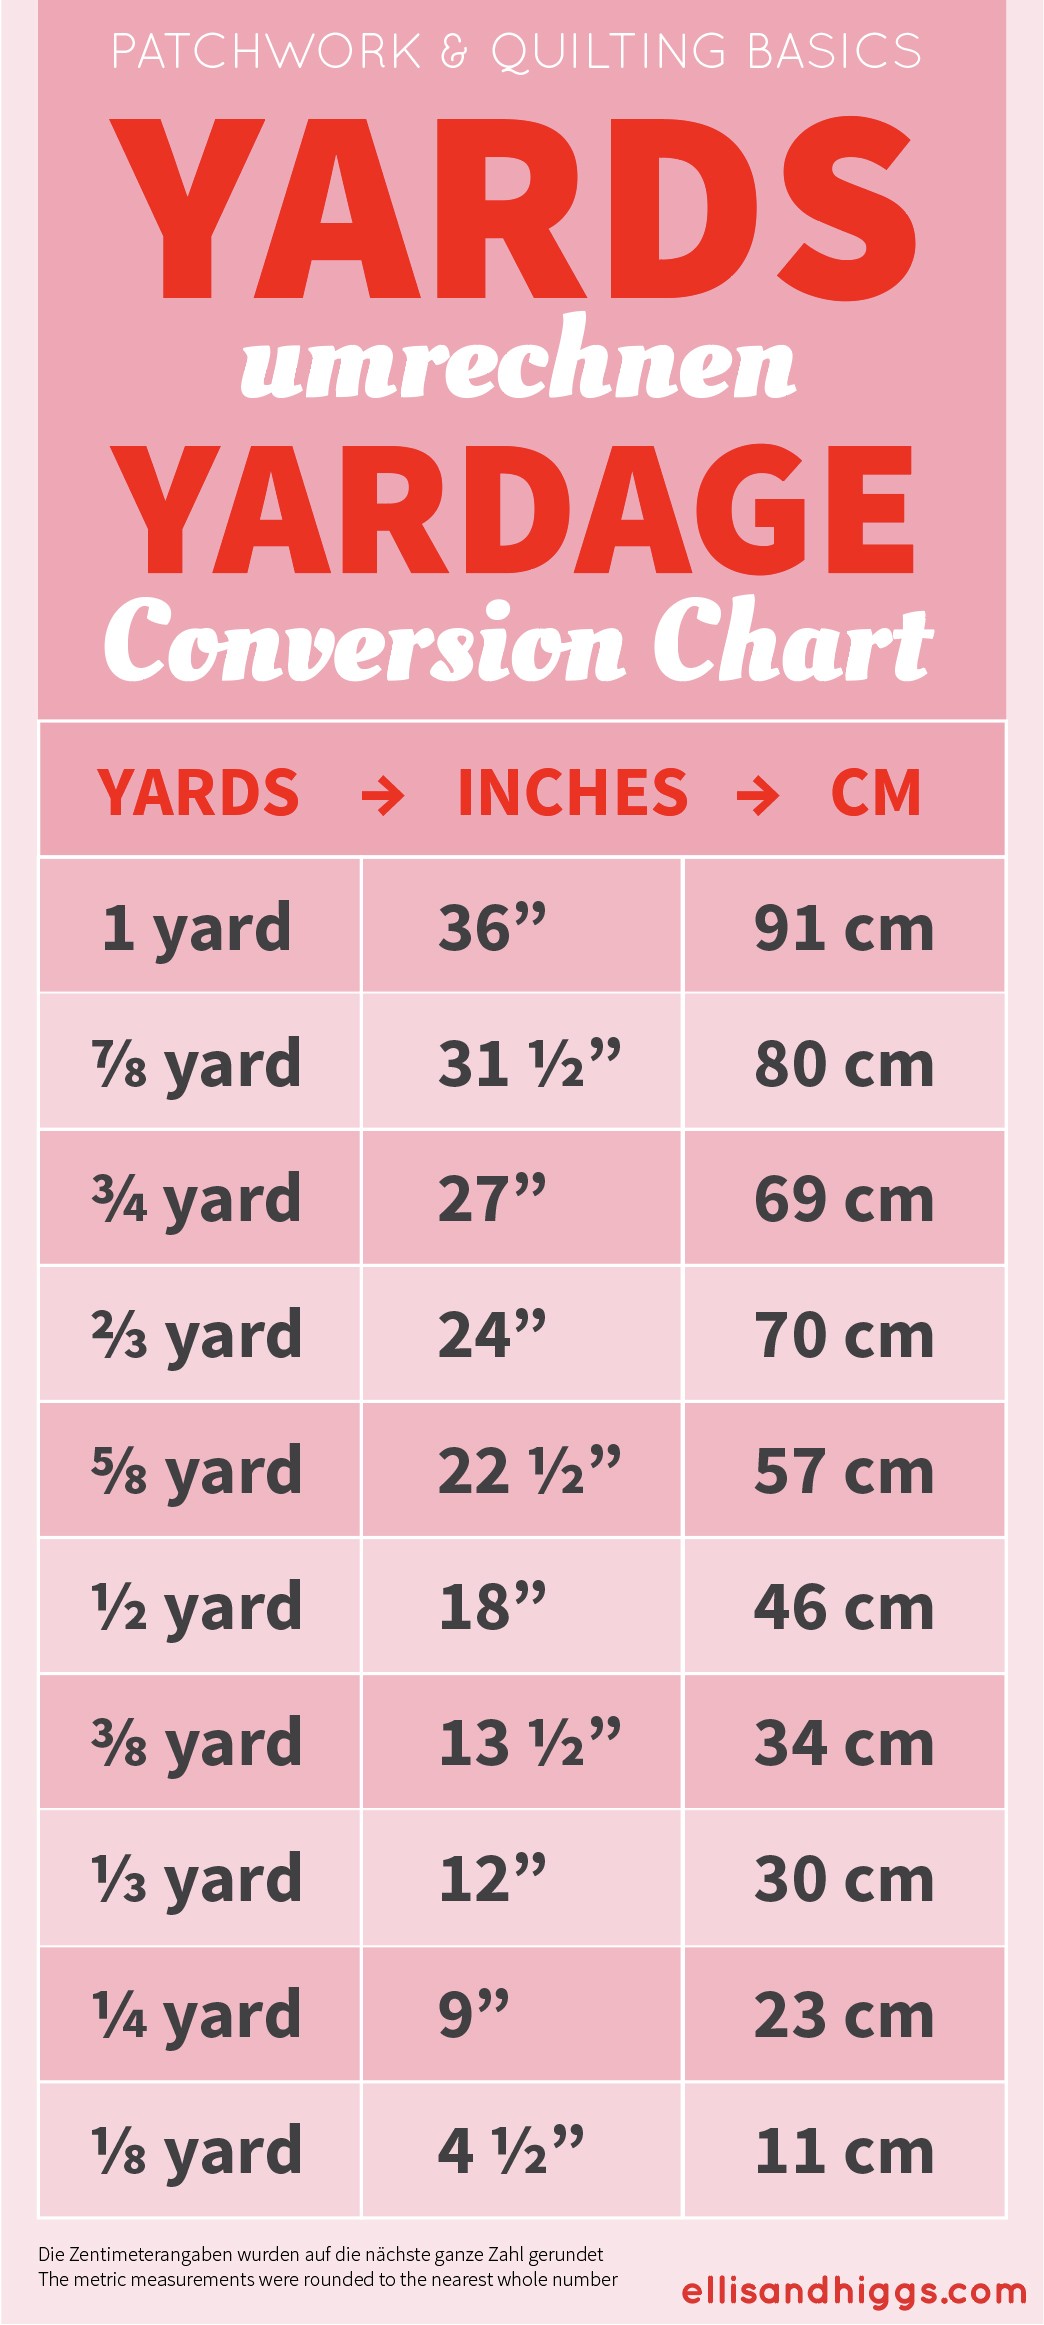 yards-umrechnungstabelle-yardage-conversion-chart-ellis-higgs